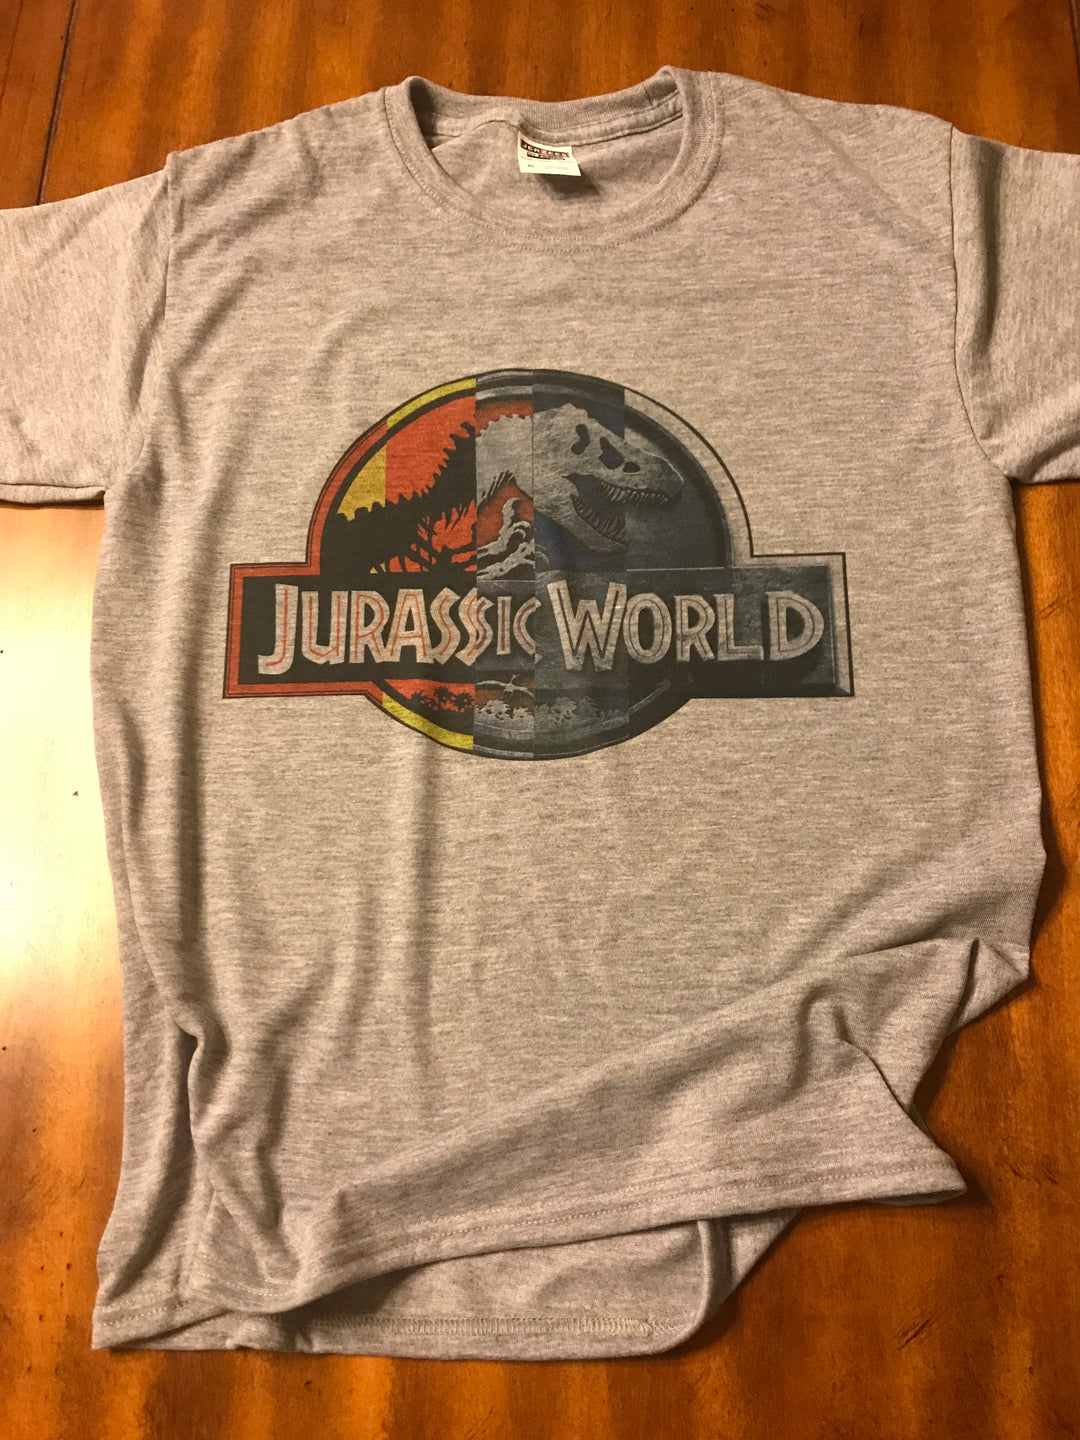 Movie Inspired Shirts // Jurassic World